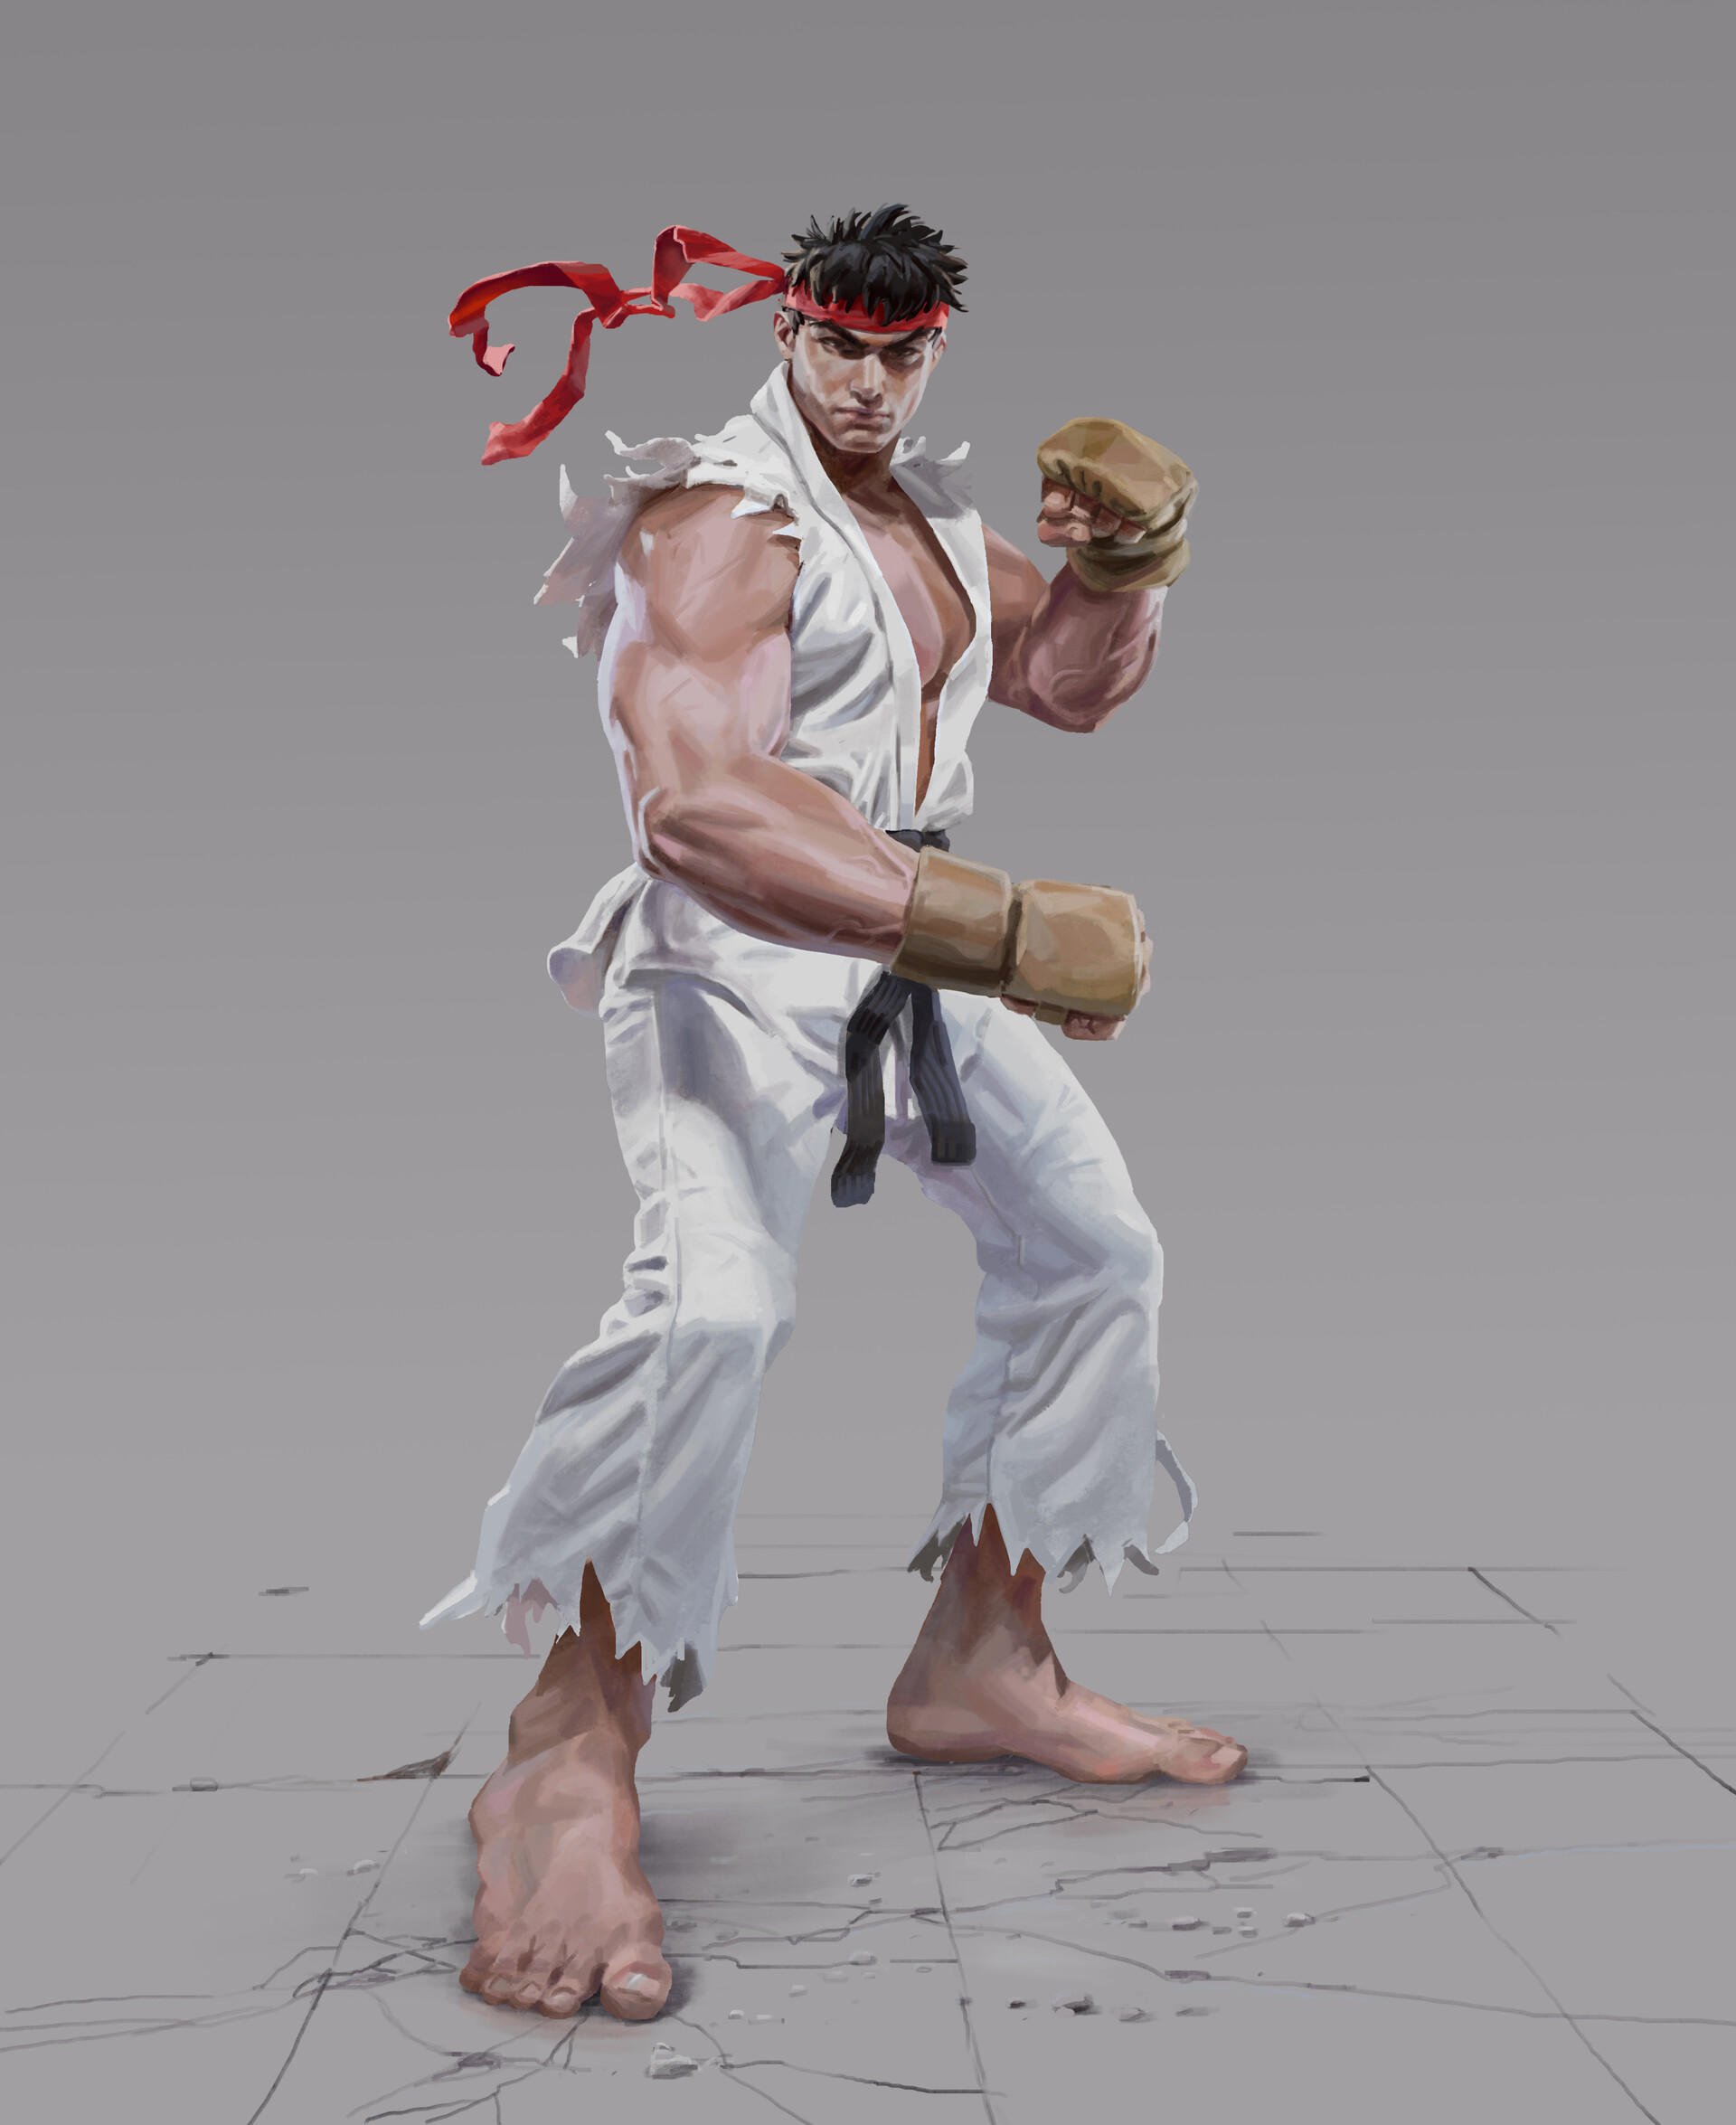 Daniel Clarke - RYU! Street Fighter fan art.